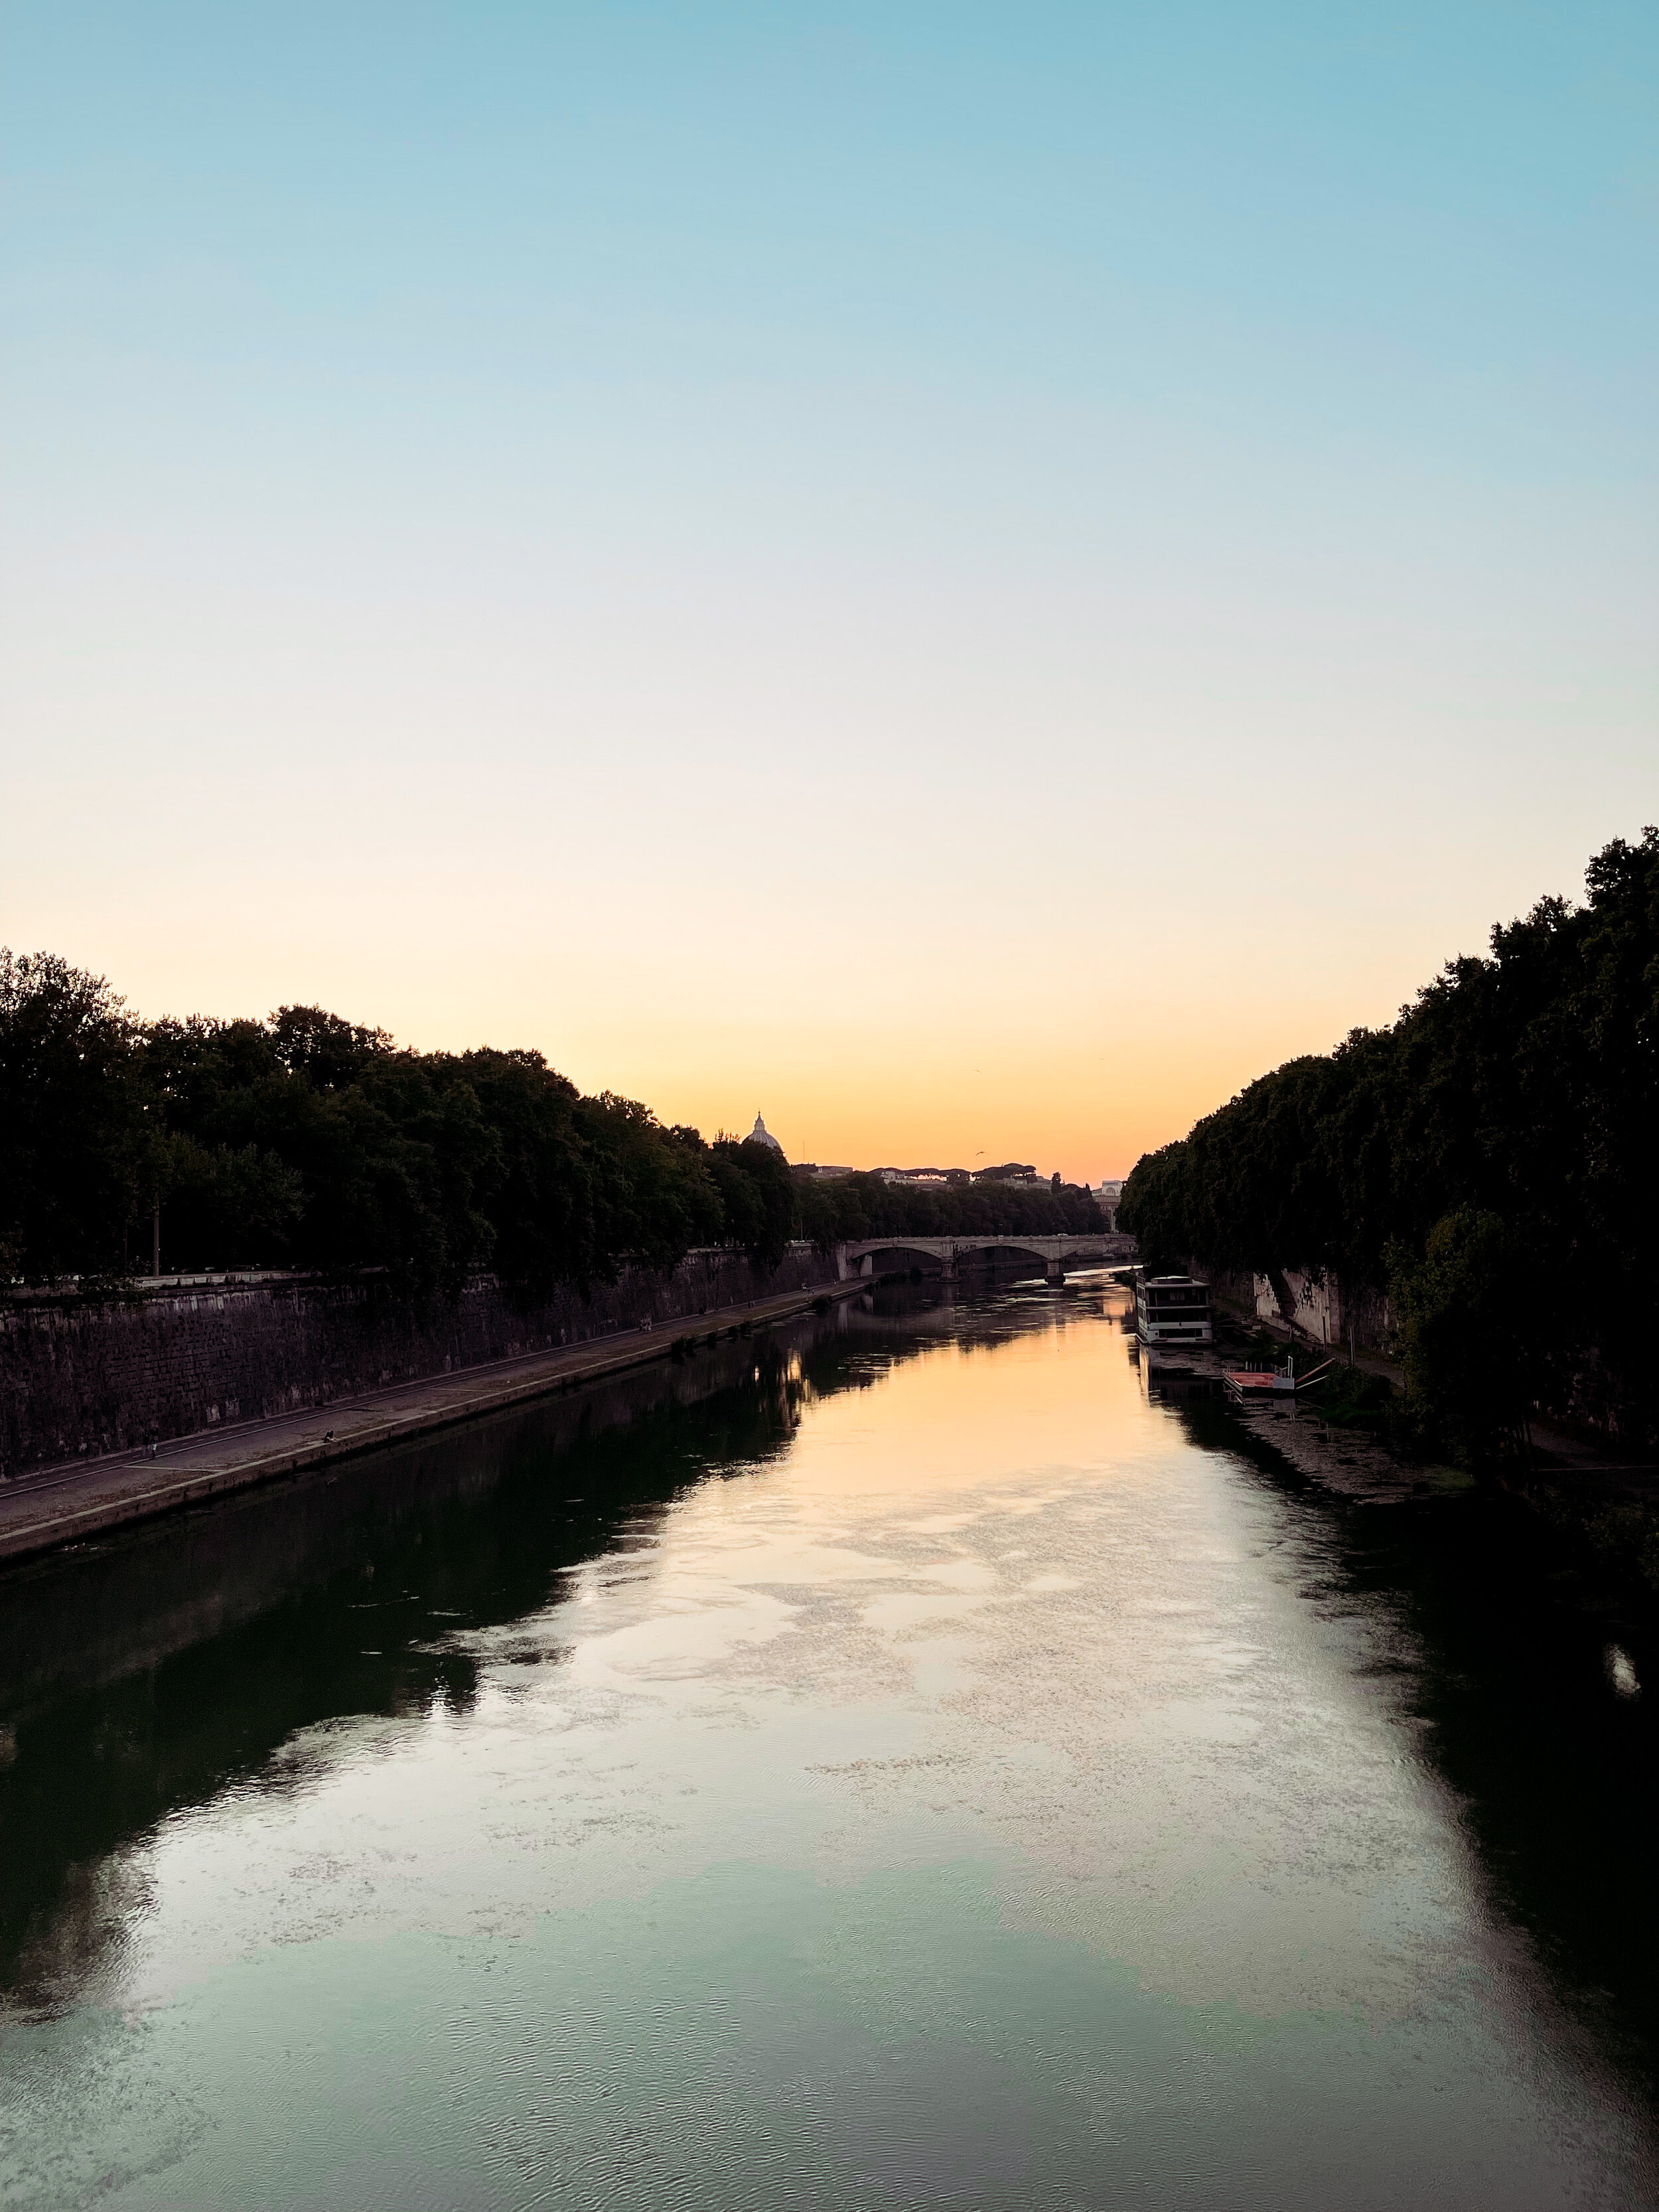 Tiber River at Sunset.JPG